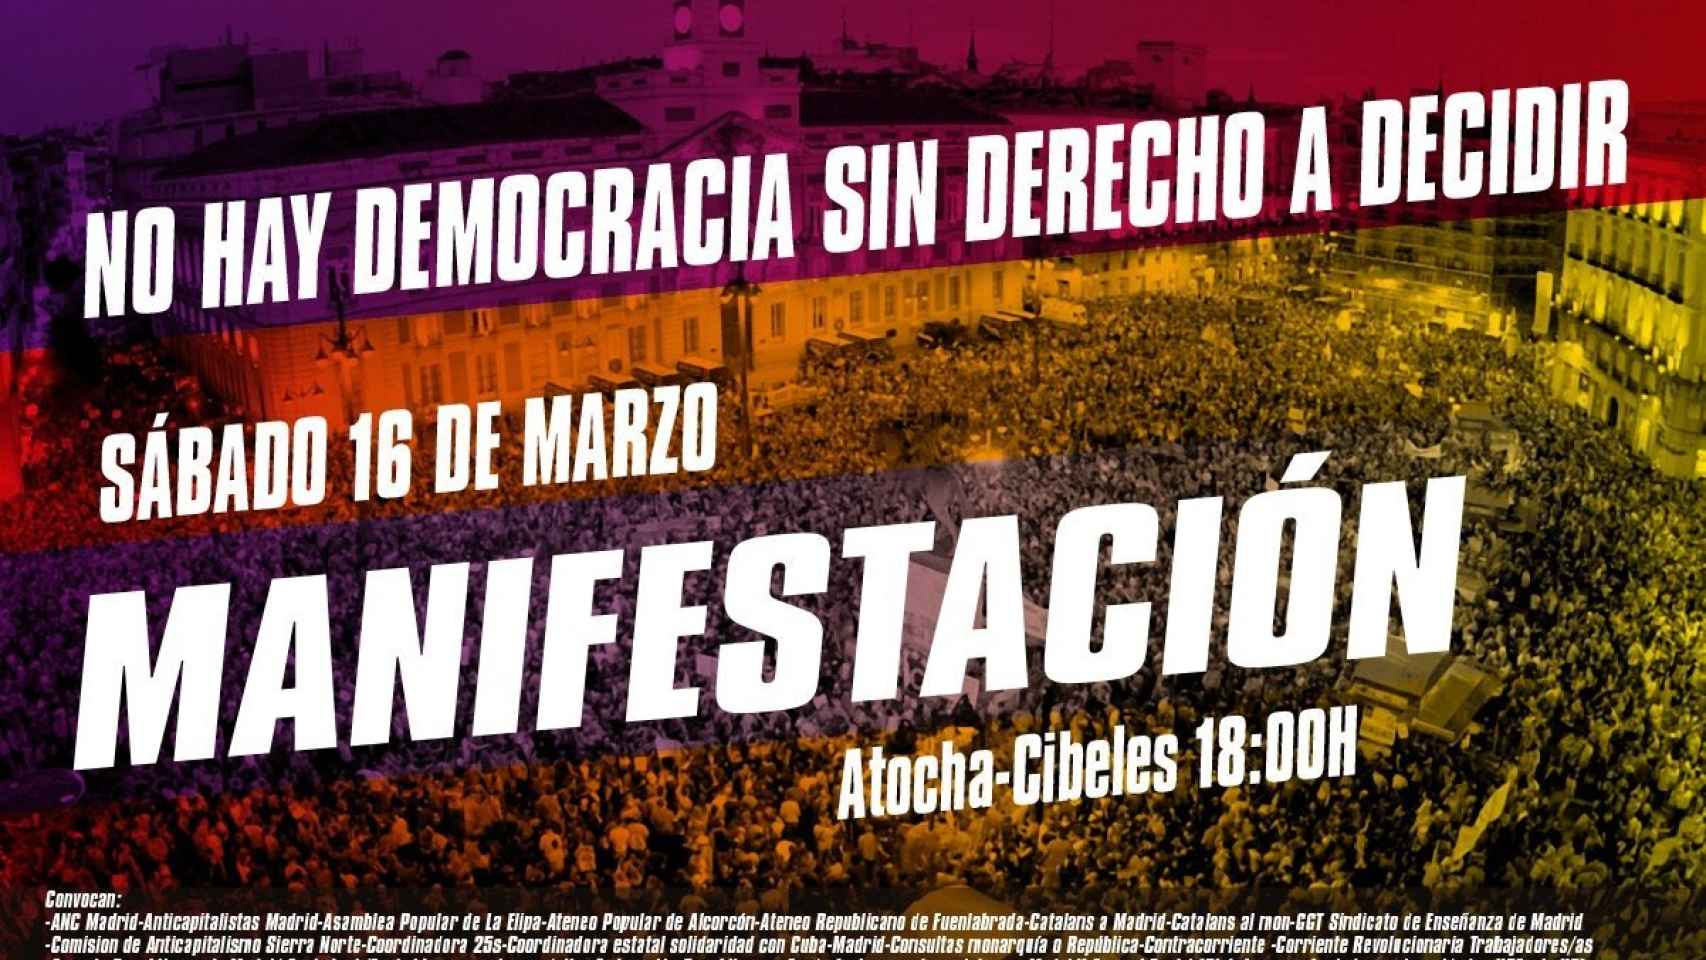 Cartel de la manifestación separatista en Madrid convocada para el 16-M.